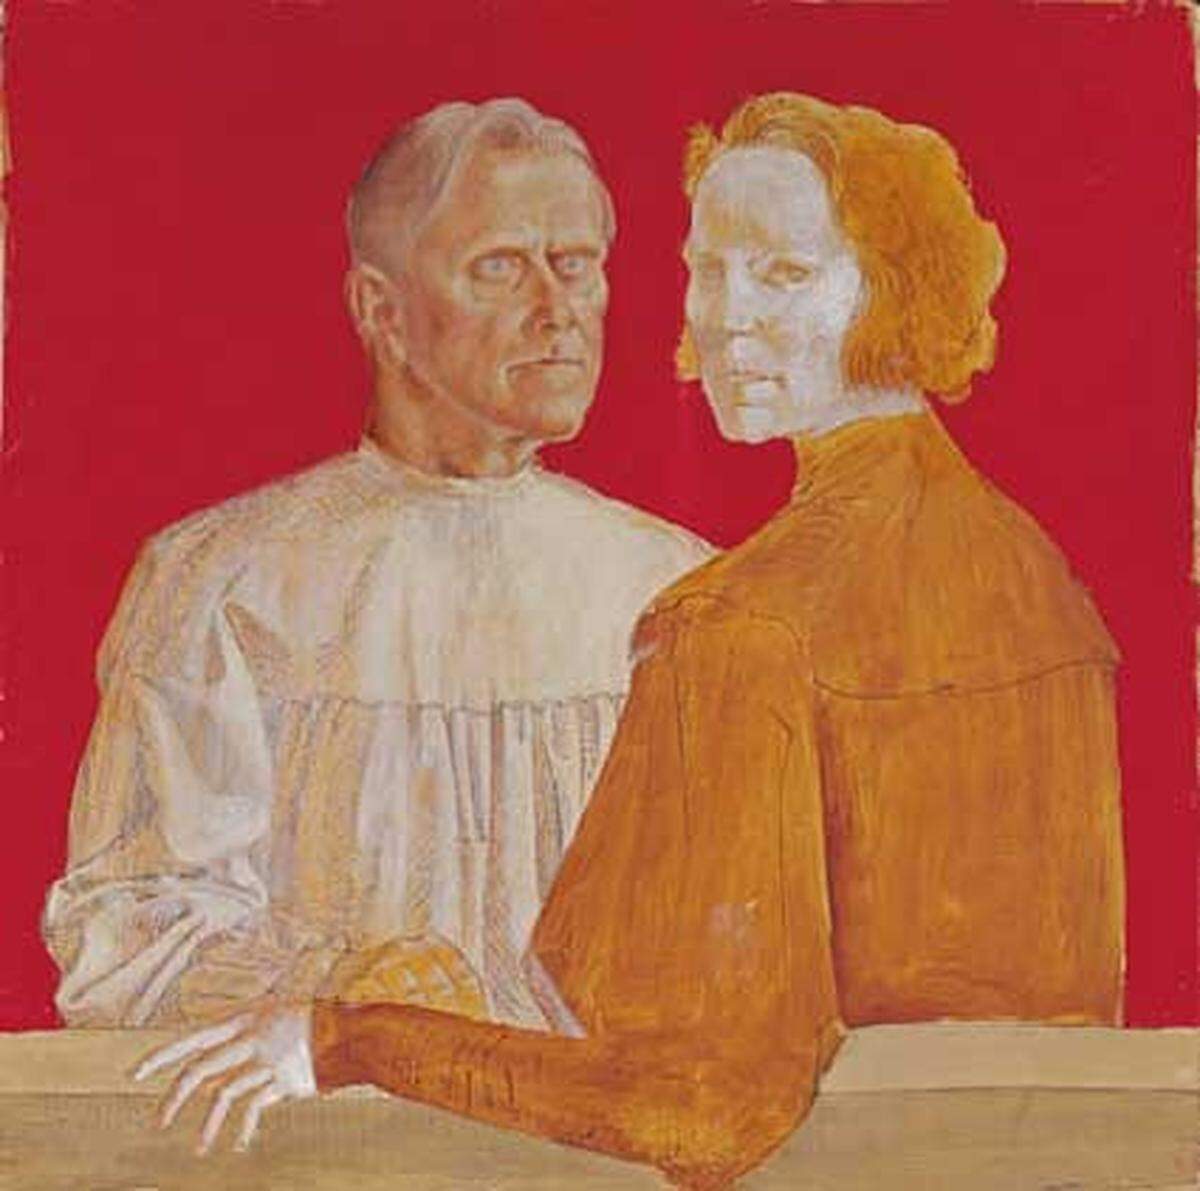  Im Bild: Otto Dix: "Bildnis Zahnarzt Dr. Frederik Gottlieb und Frau I", 1936, Galerie Neue Meister, Staatliche Kunstsammlungen Dresden (c) VBK Wien, 2009